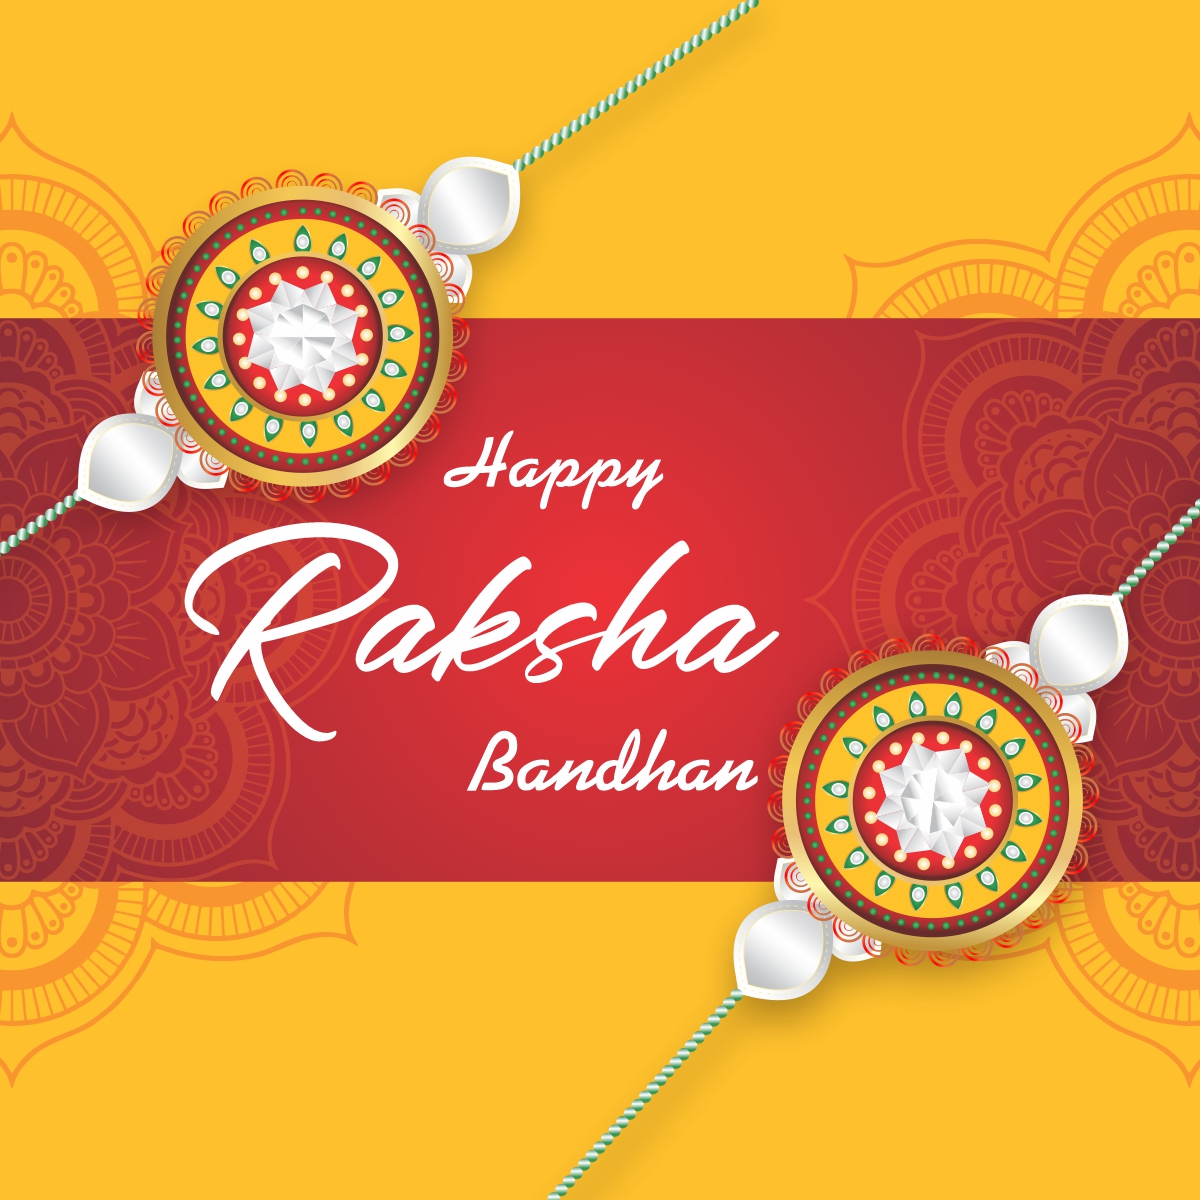 Download over 999+ Amazing Raksha Bandhan Images Full 4K Collection